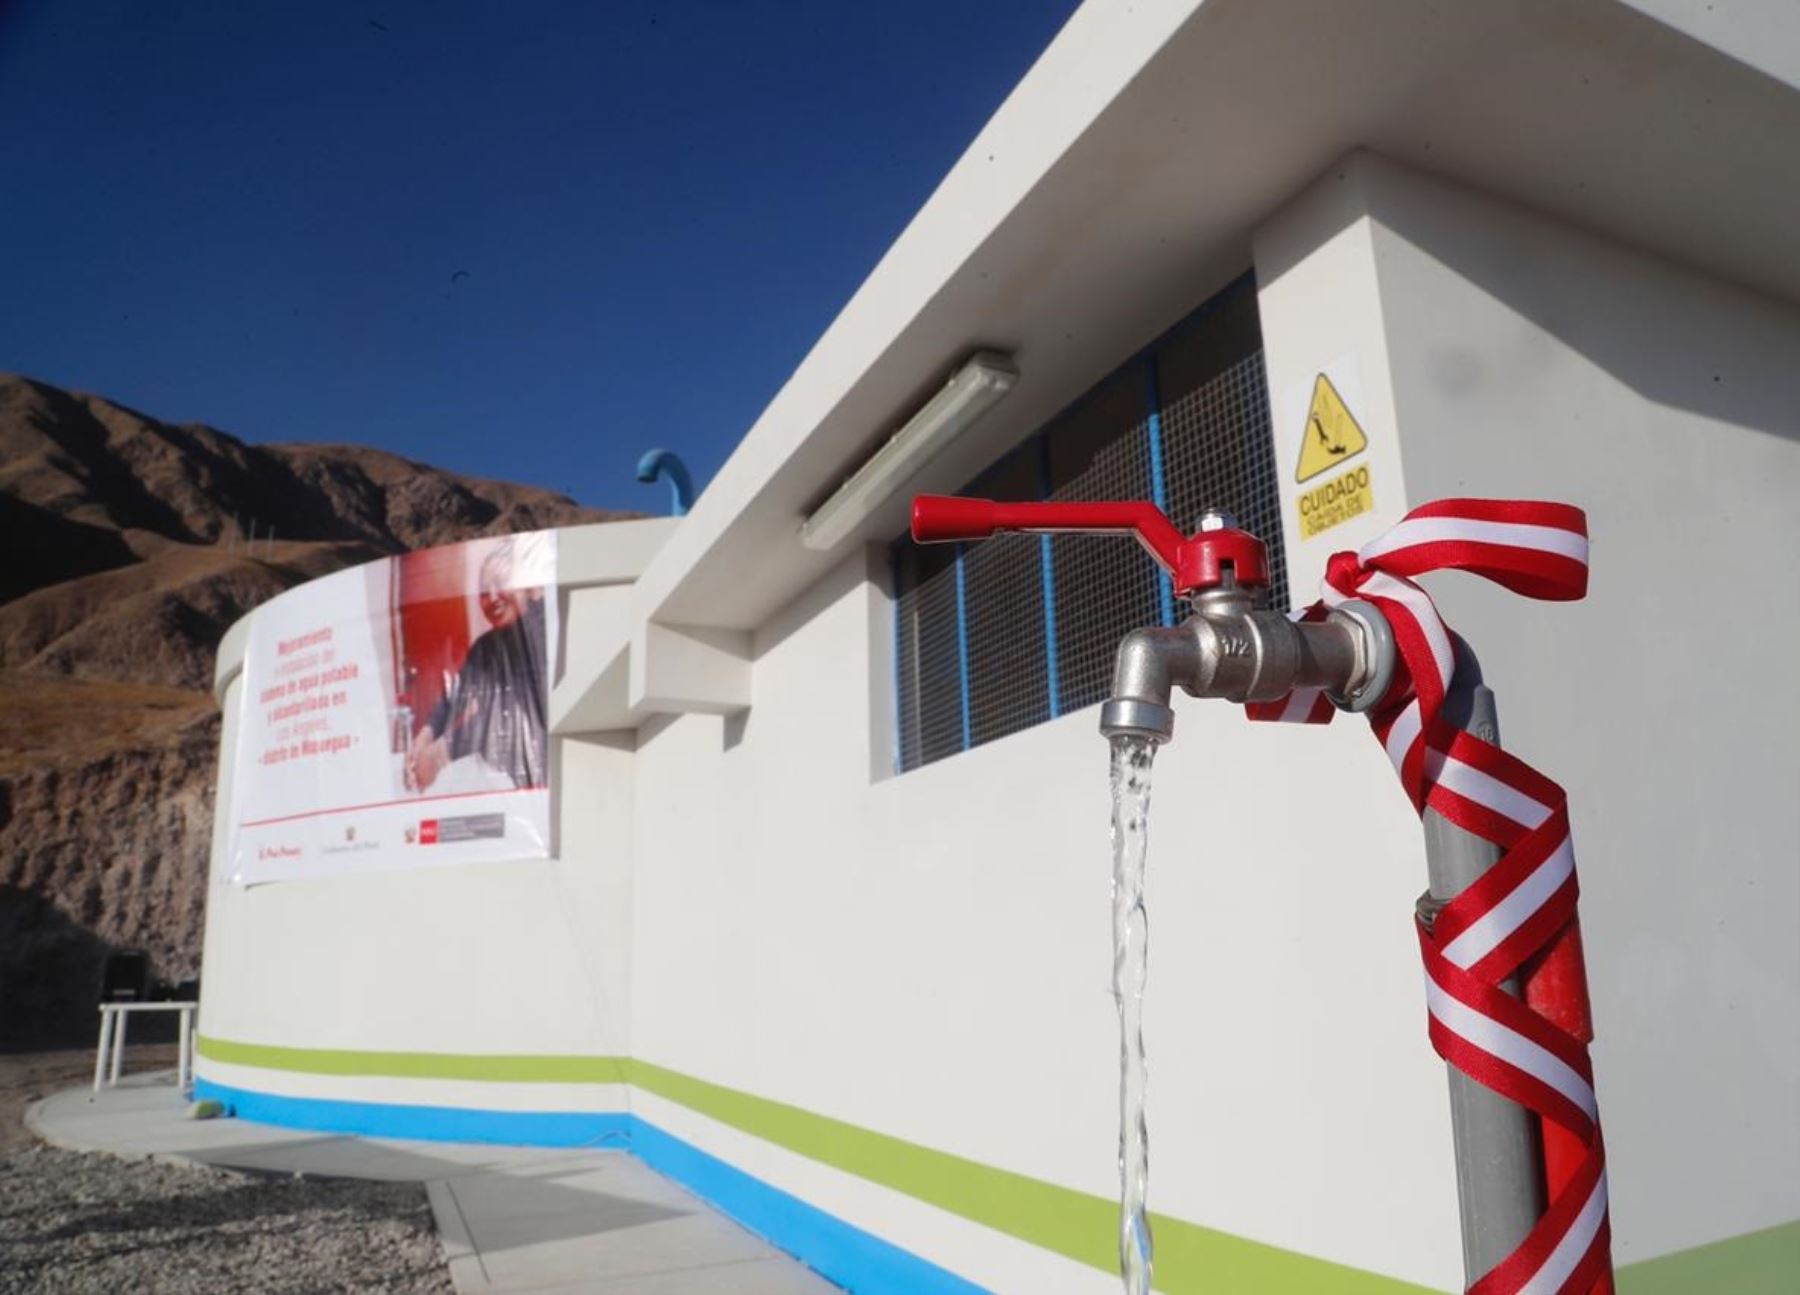 Ministerio de Vivienda transfiere S/ 30.8 millones a Moquegua para financiar proyecto de agua potable y alcantarillado en la provincia de General Sánchez Cerro. Los recursos forman parte del plan Arranca Perú 2. ANDINA/Difusión